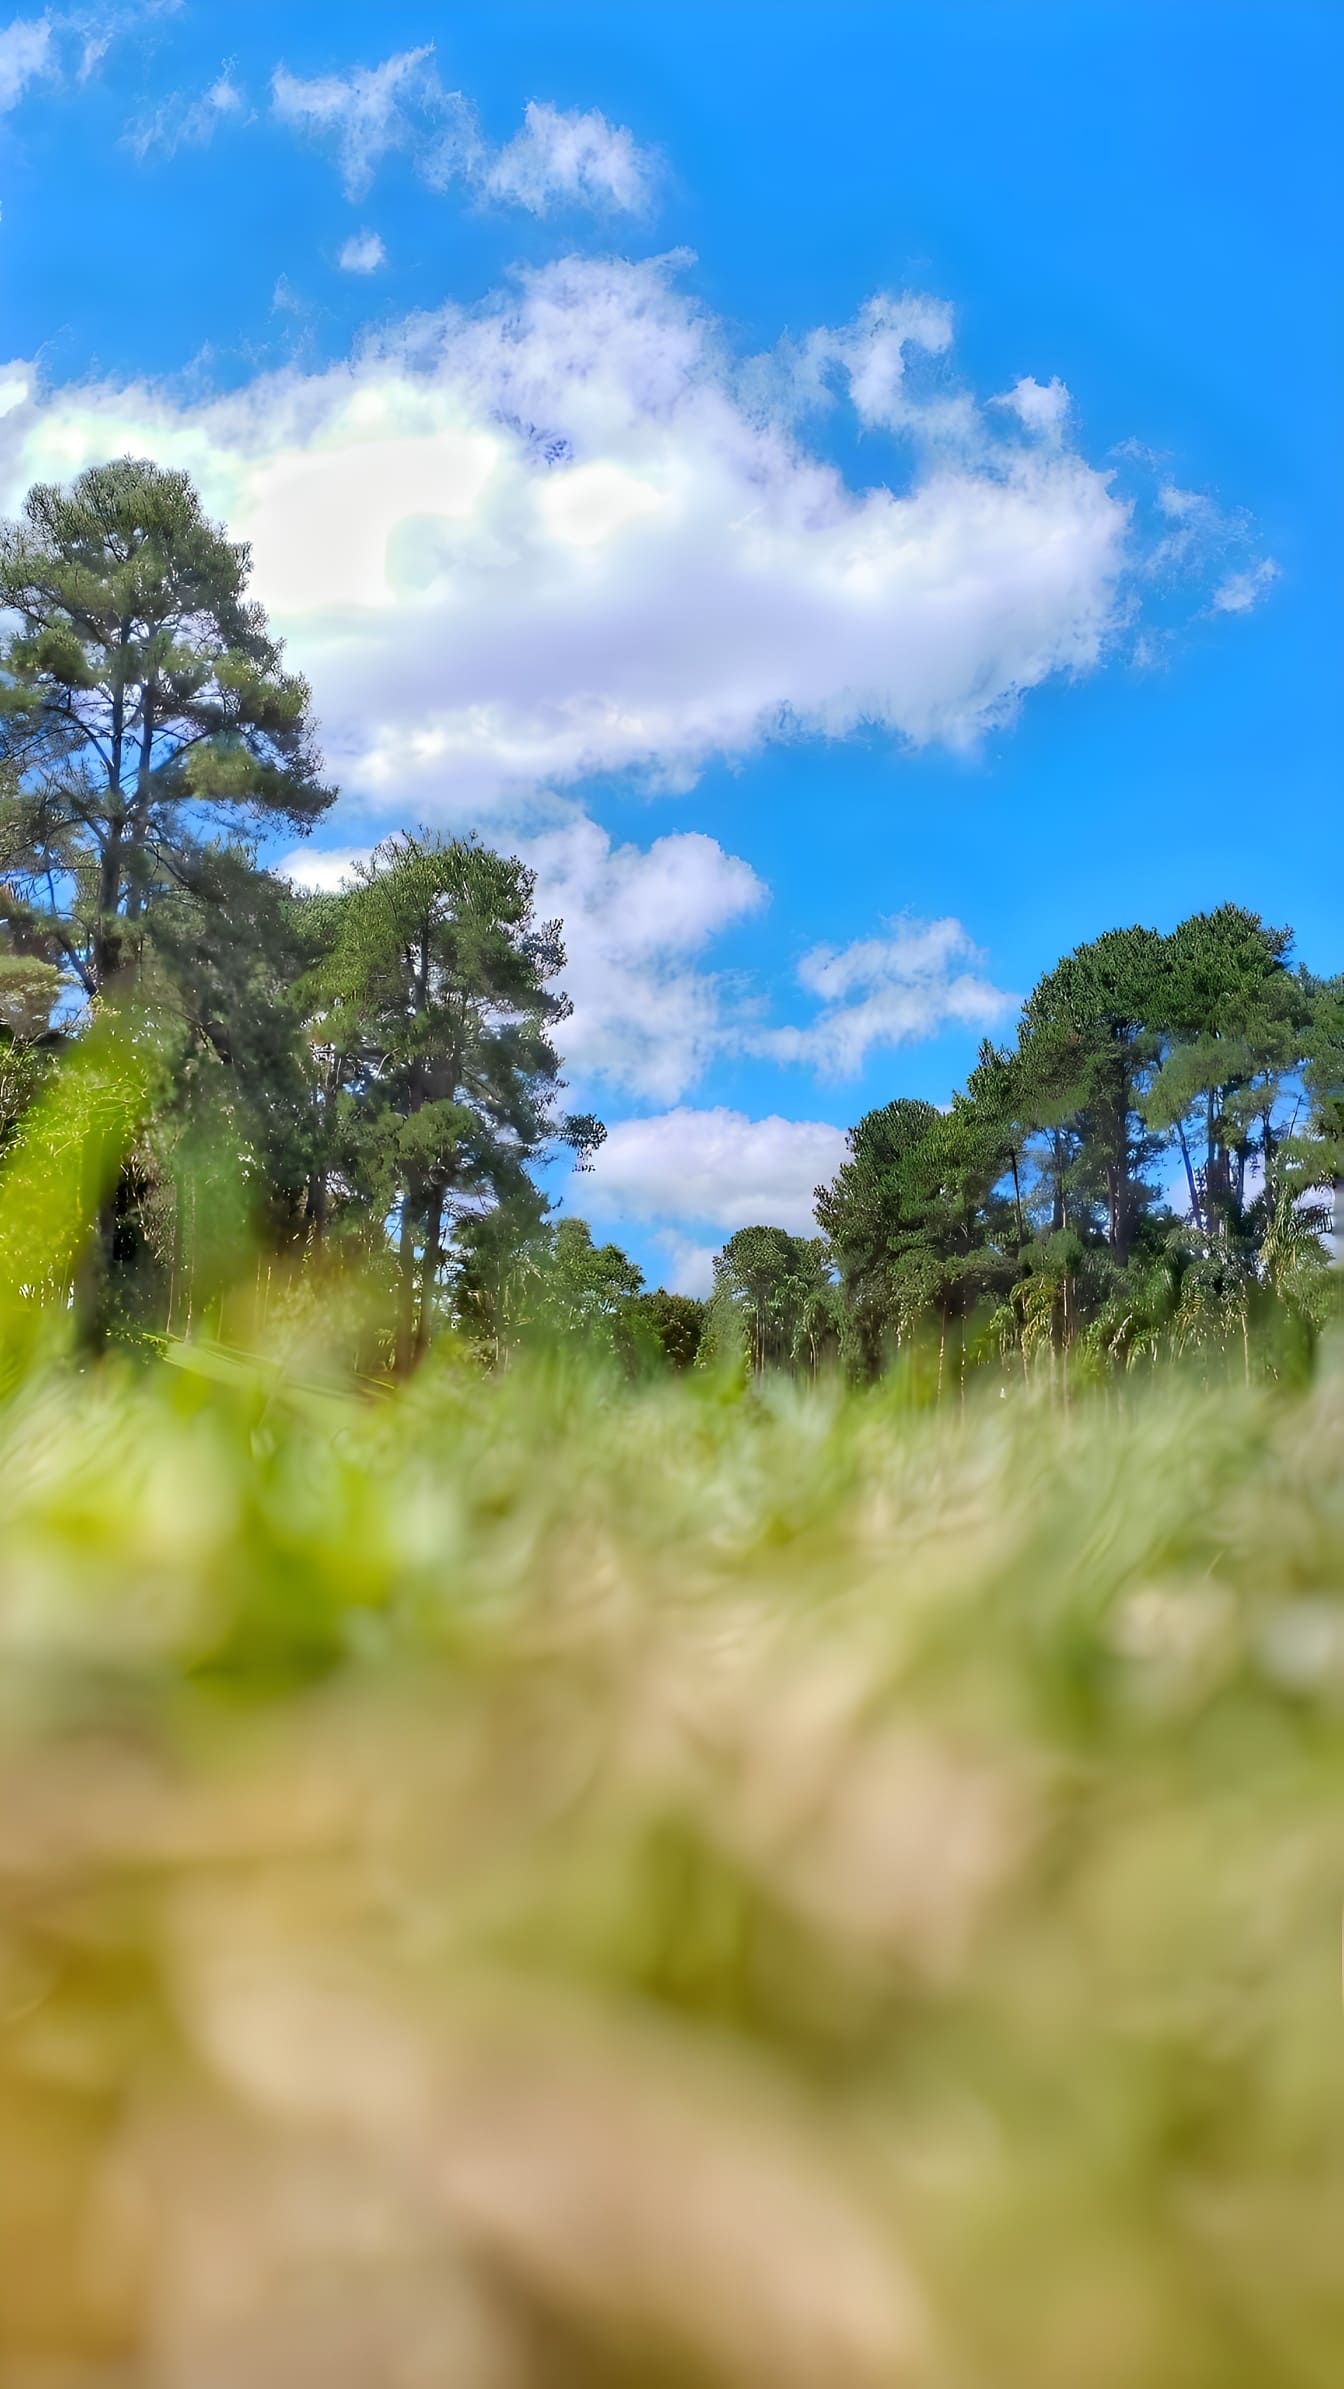 Zdjęcie pod niskim kątem pola traw i drzew z błękitnym niebem nad głową